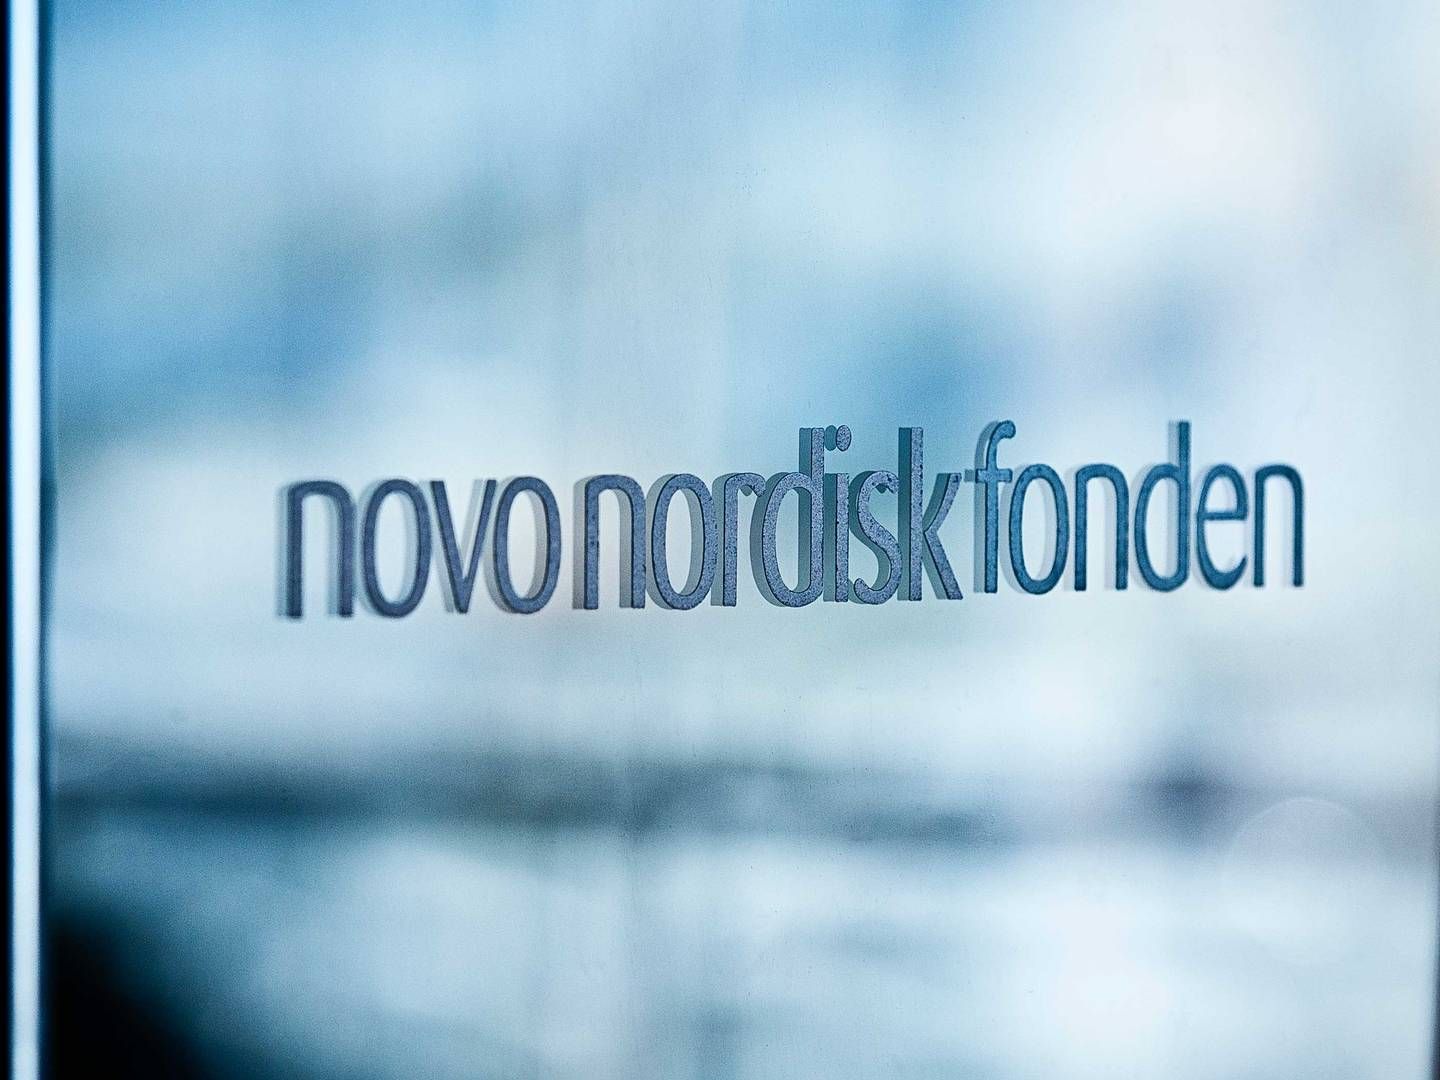 Forskere er bange for at miste støtten til deres forskning, hvis de udtaler sig kritisk om Novo Nordisk Fonden, skriver Frihedsbrevet. | Foto: Novo Nordisk Fonden / Pr